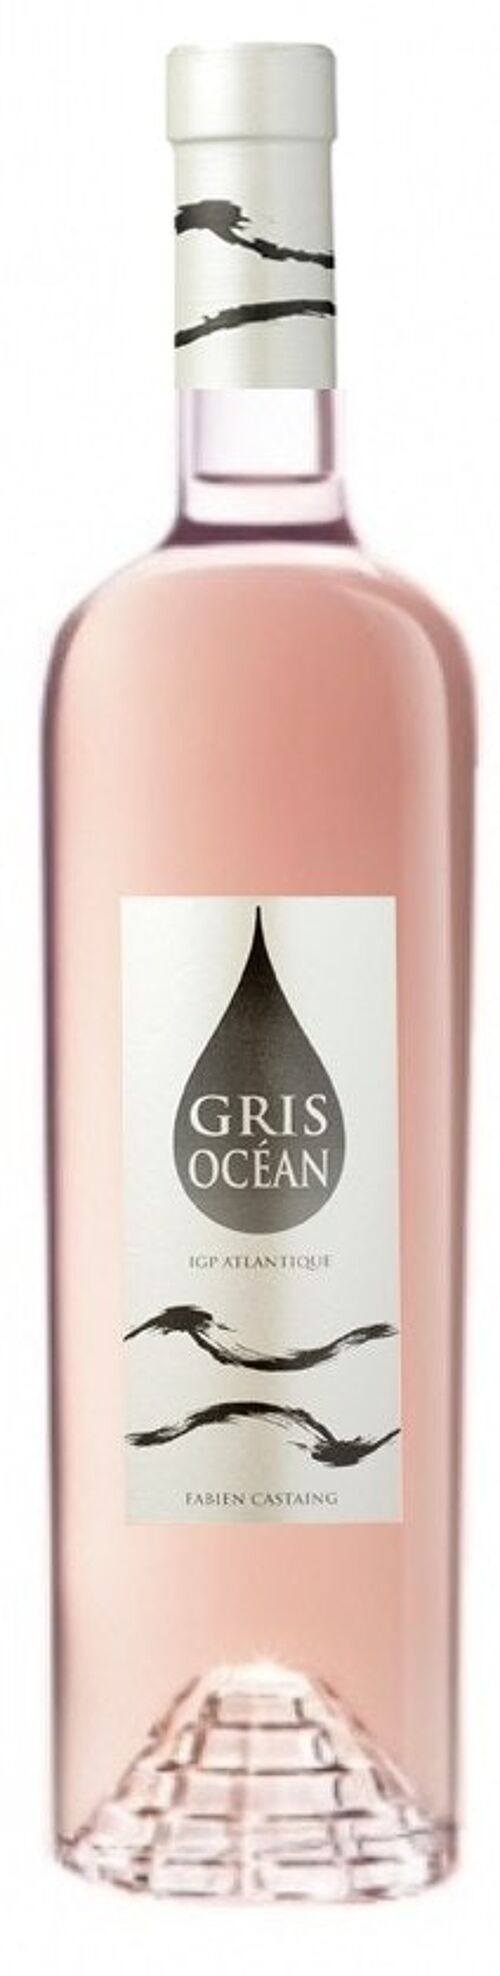 Vin rosé océanique IGP Atlantique Gris Océan 75cl